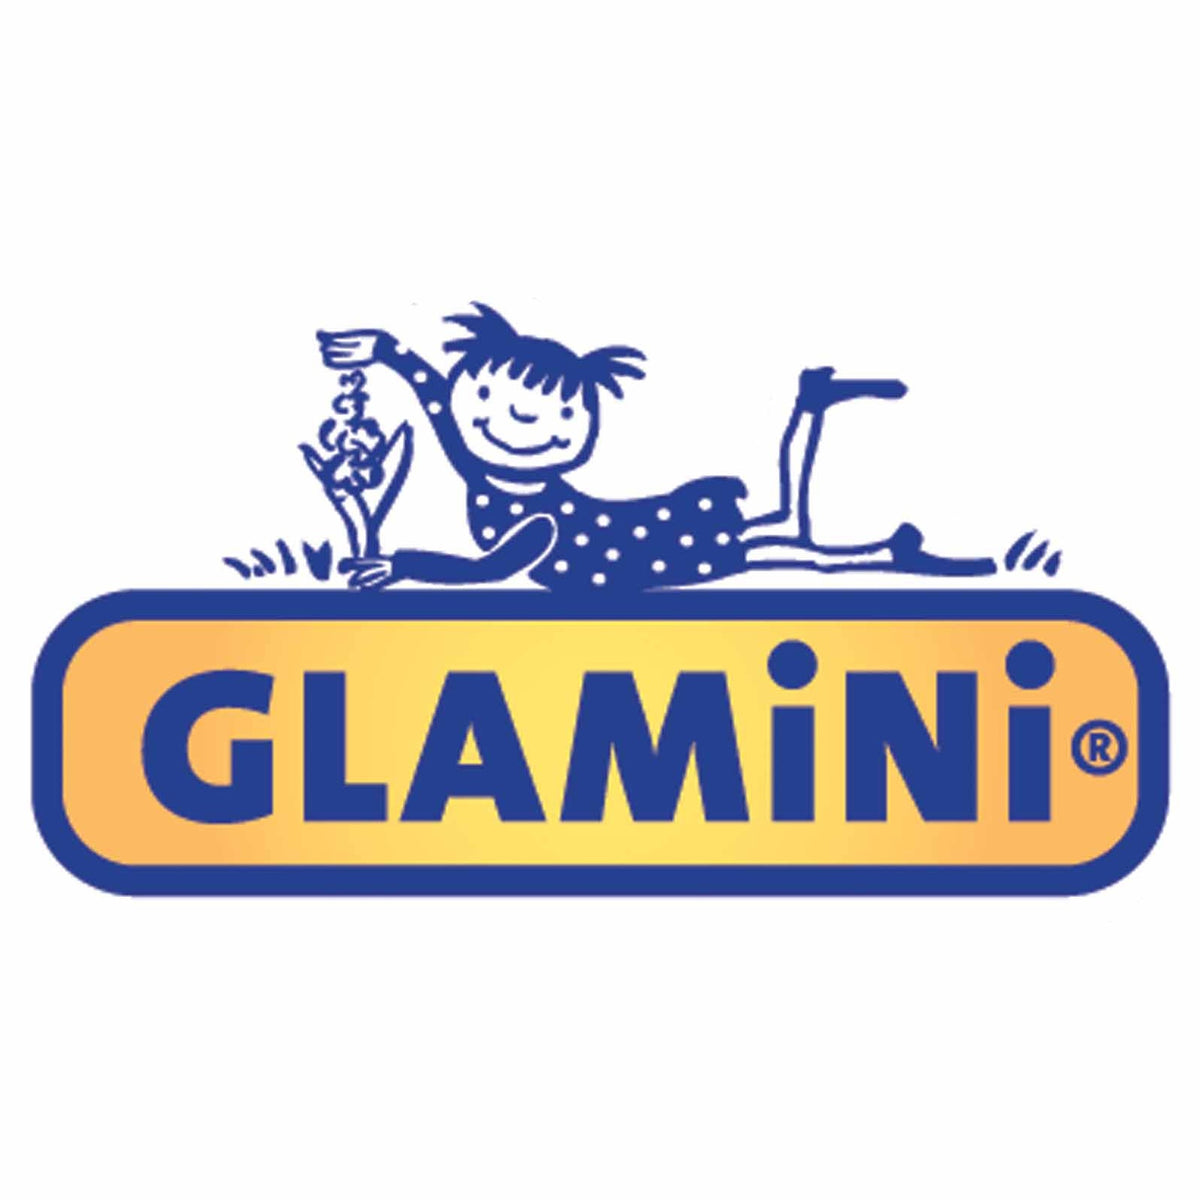 12 Glaminis en mélange - Glamini - Bulbes à fleurs